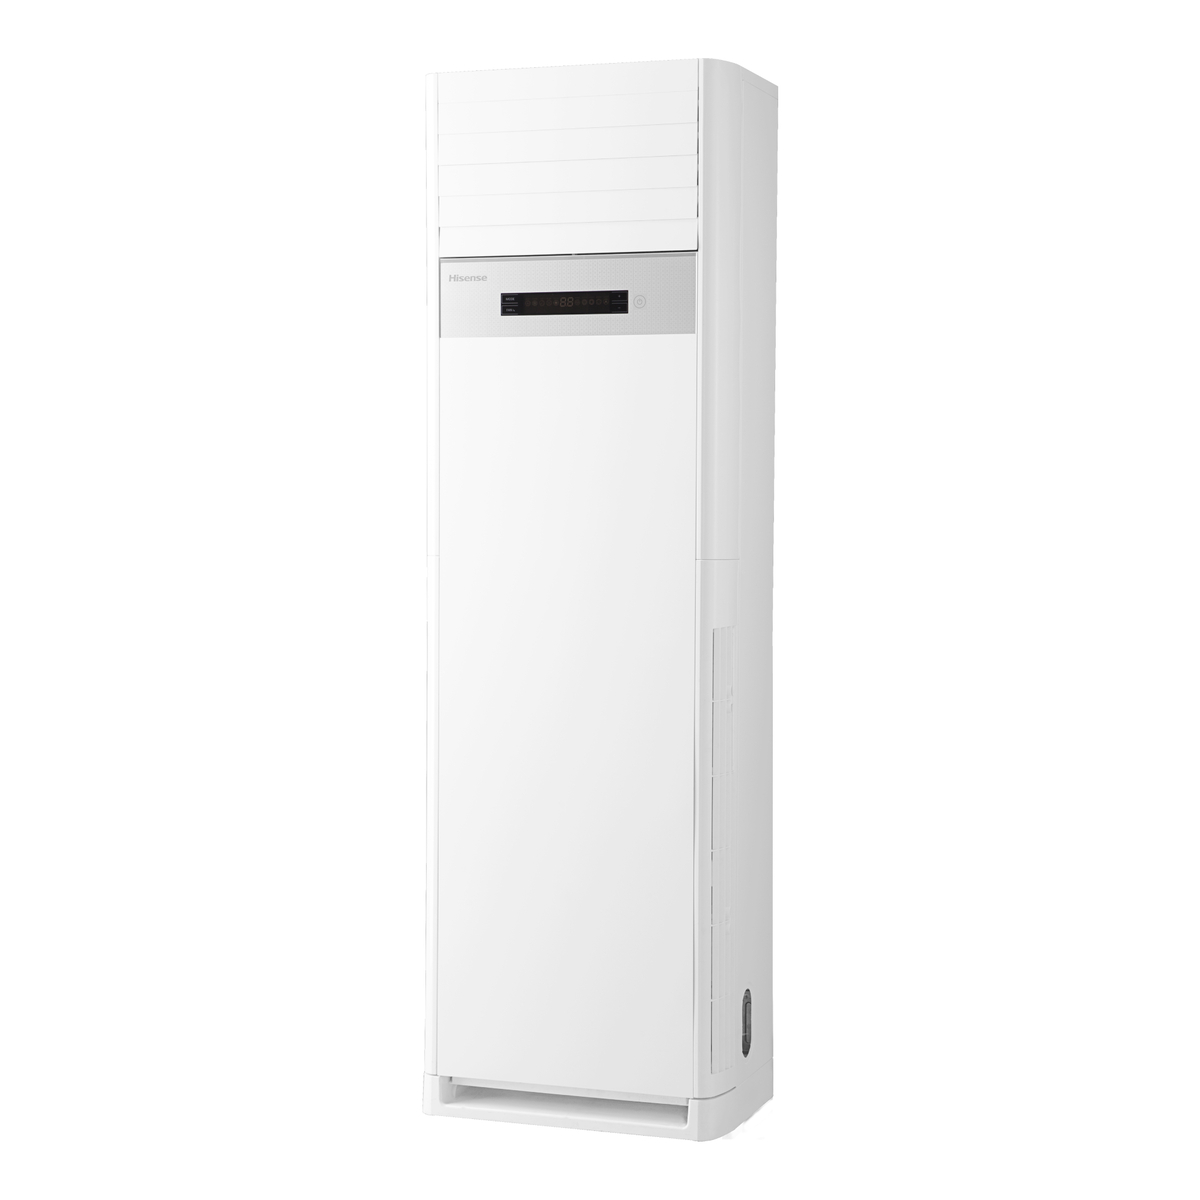 Hisense 5Ton Floor Standing Air Conditioner, White, AUF-60CR4SMPA3-I